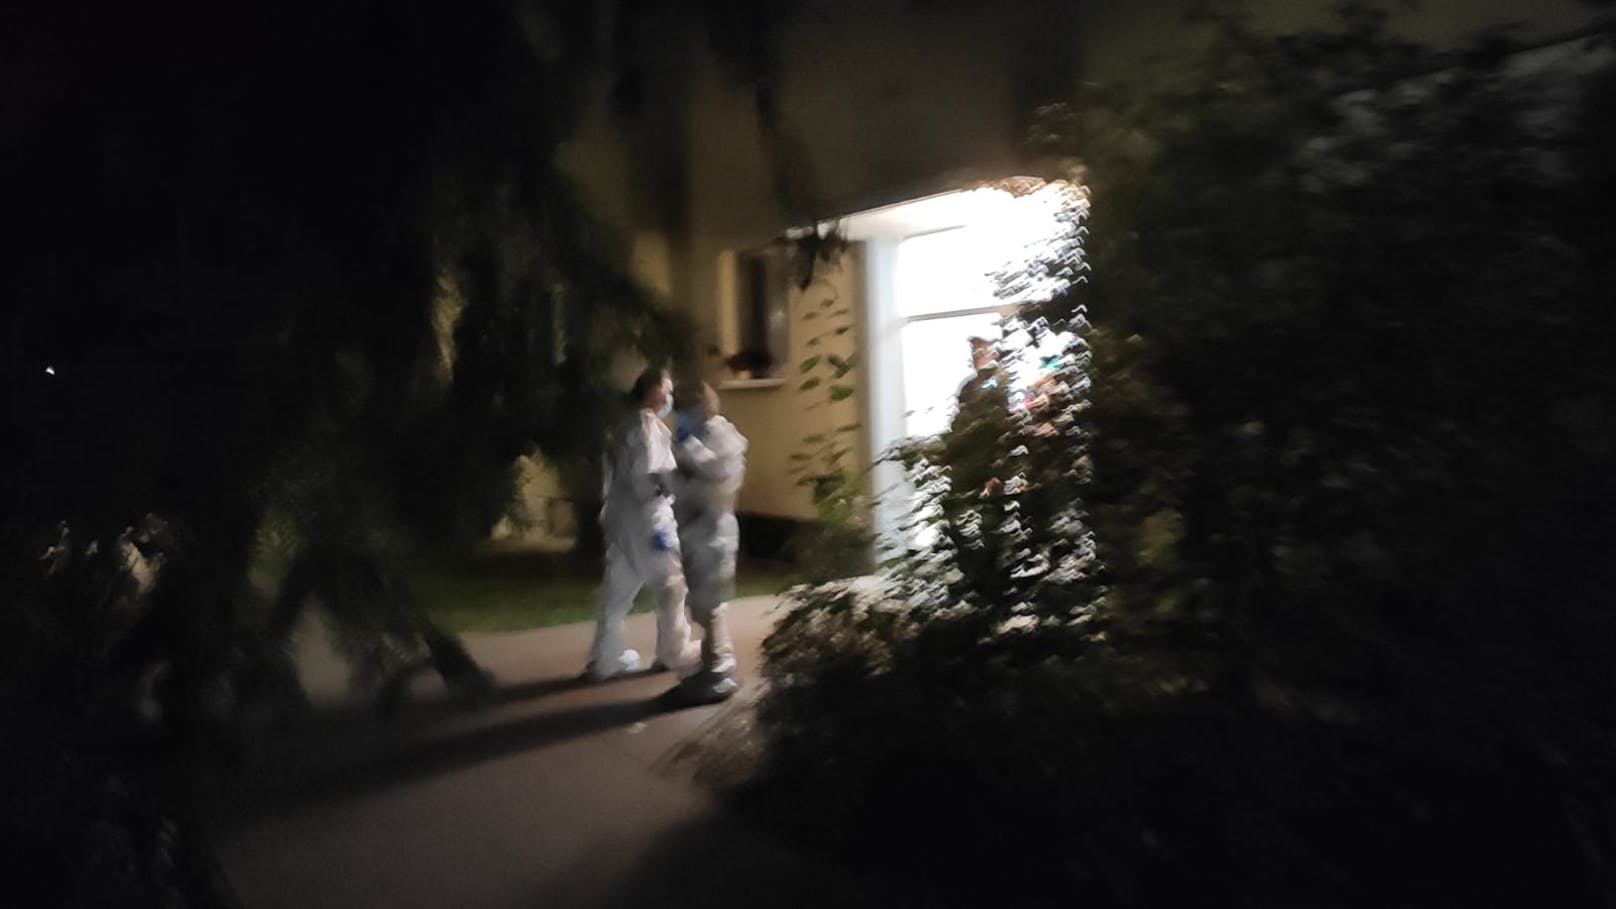 Mord-Alarm in der Pierre-Albin-Hansson-Siedlung in Favoriten: Eine Frau und ein Mann wurden tot aufgefunden. Die Polizei ermittelt.